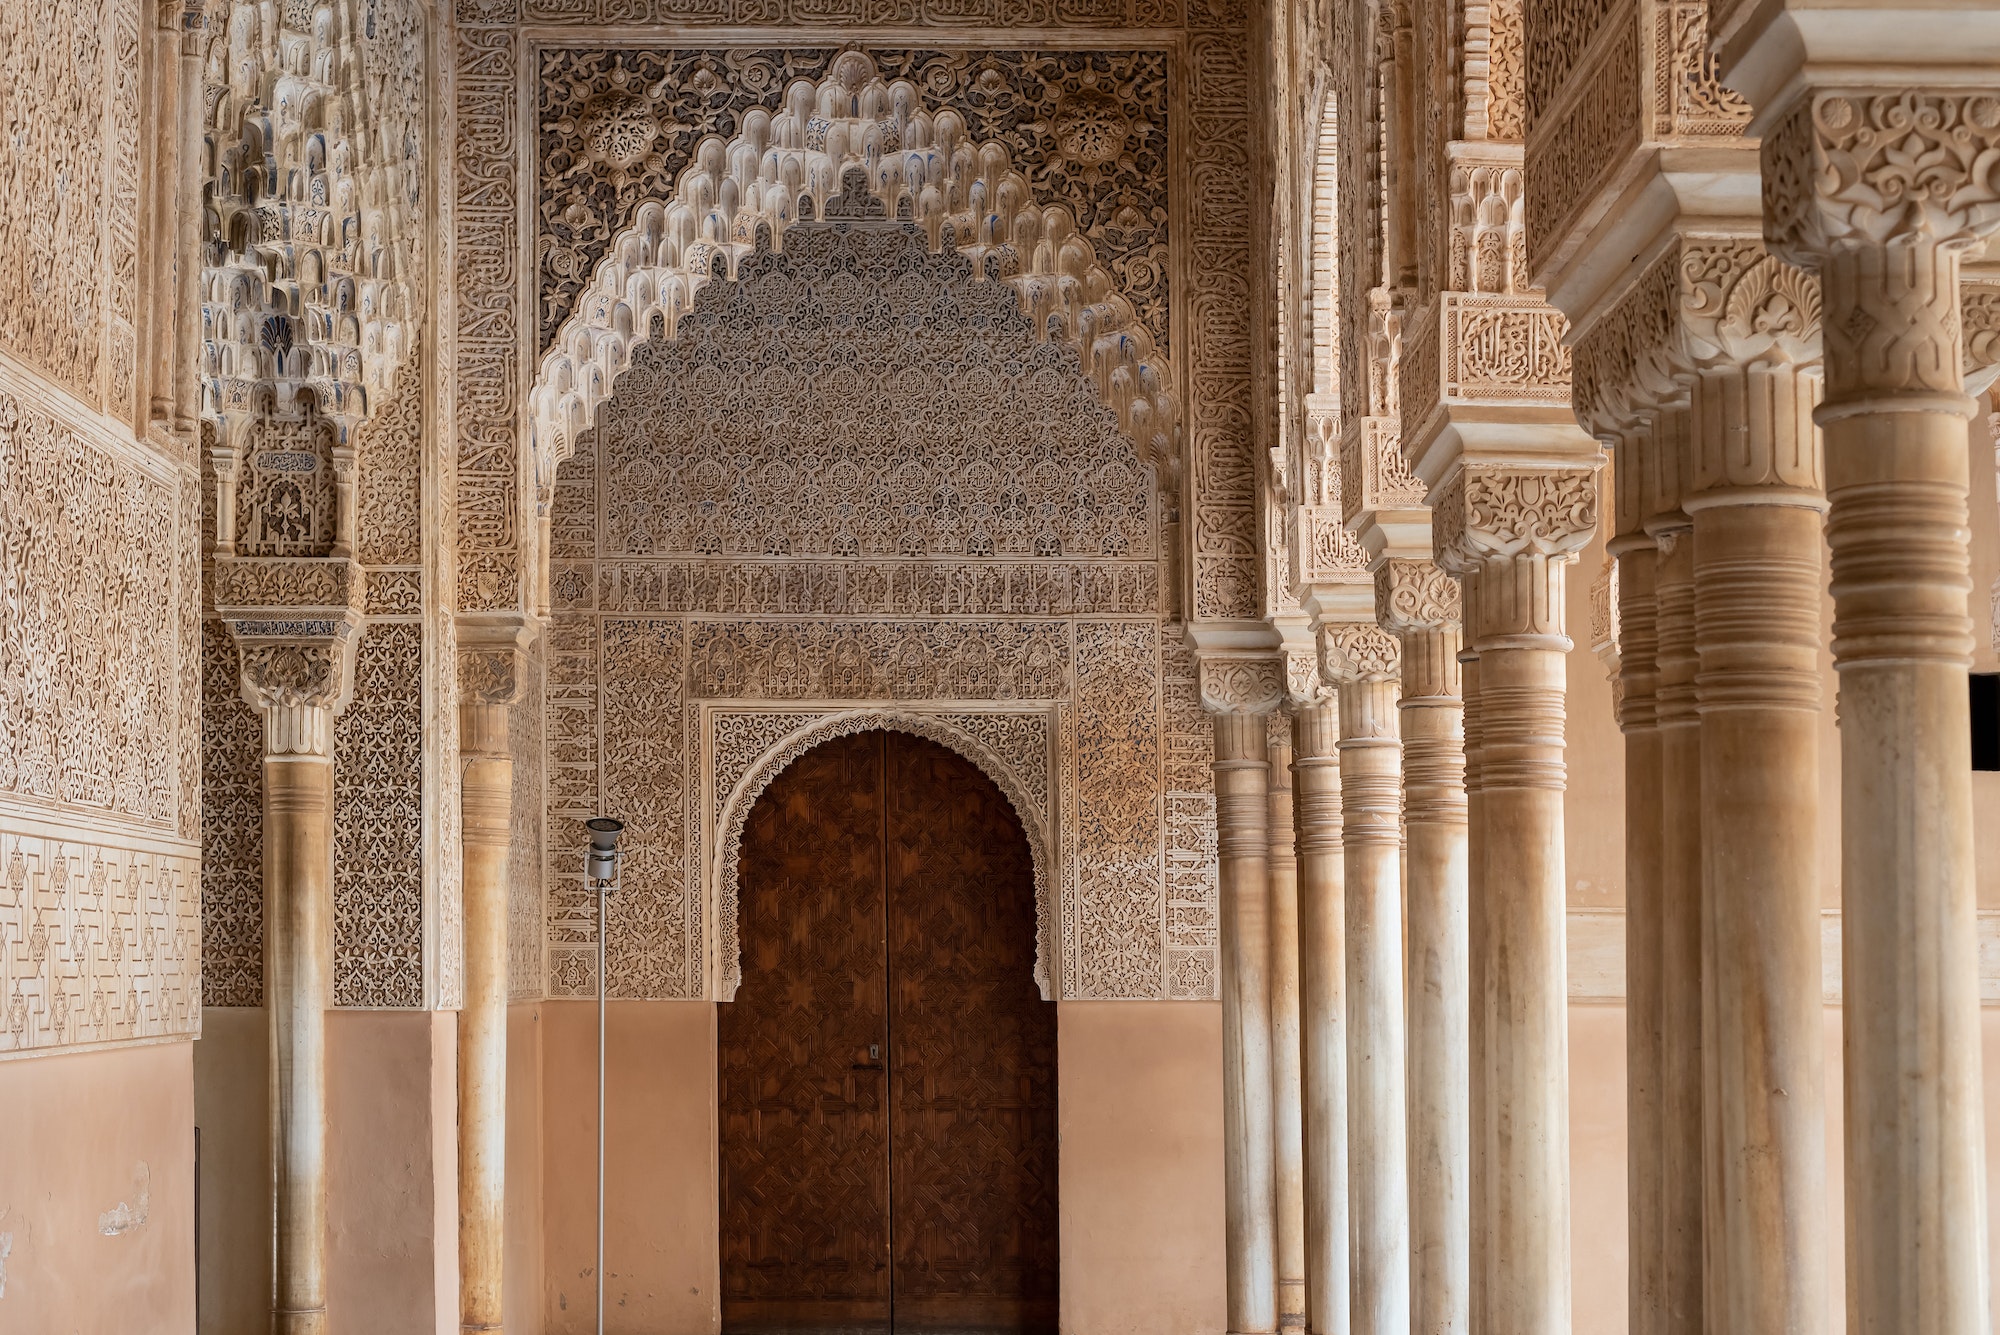 Moorish arches in The Alhambra, Granada, Spain